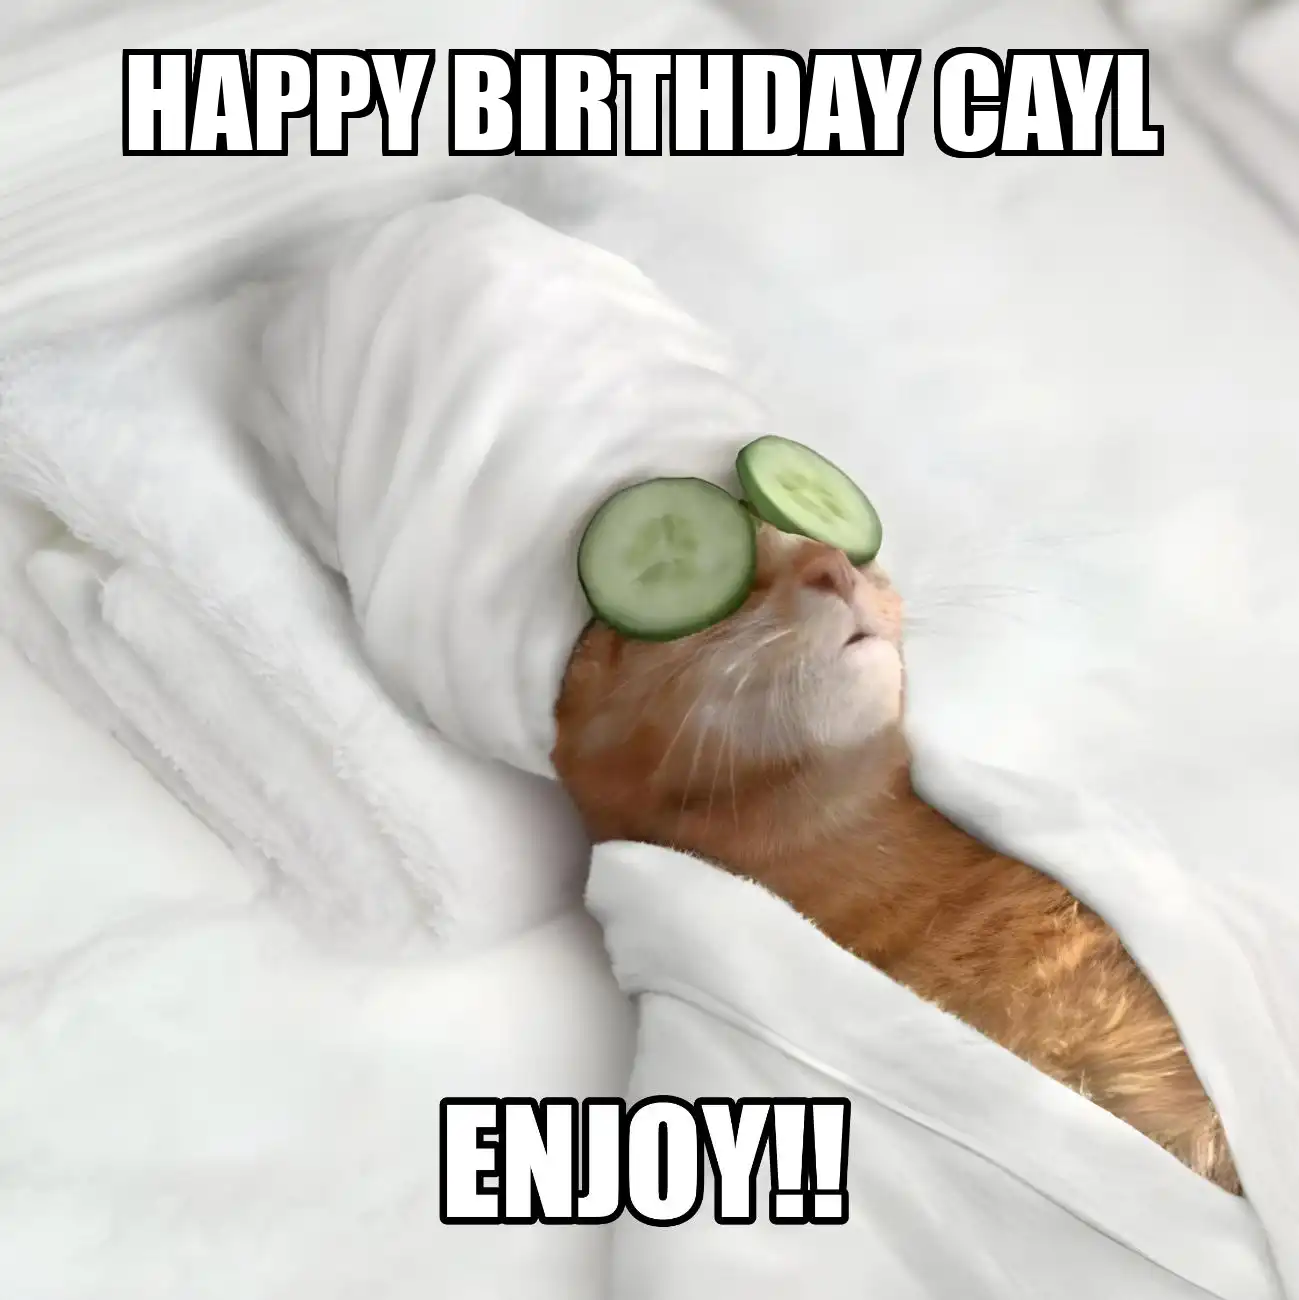 Happy Birthday Cayl Enjoy Cat Meme